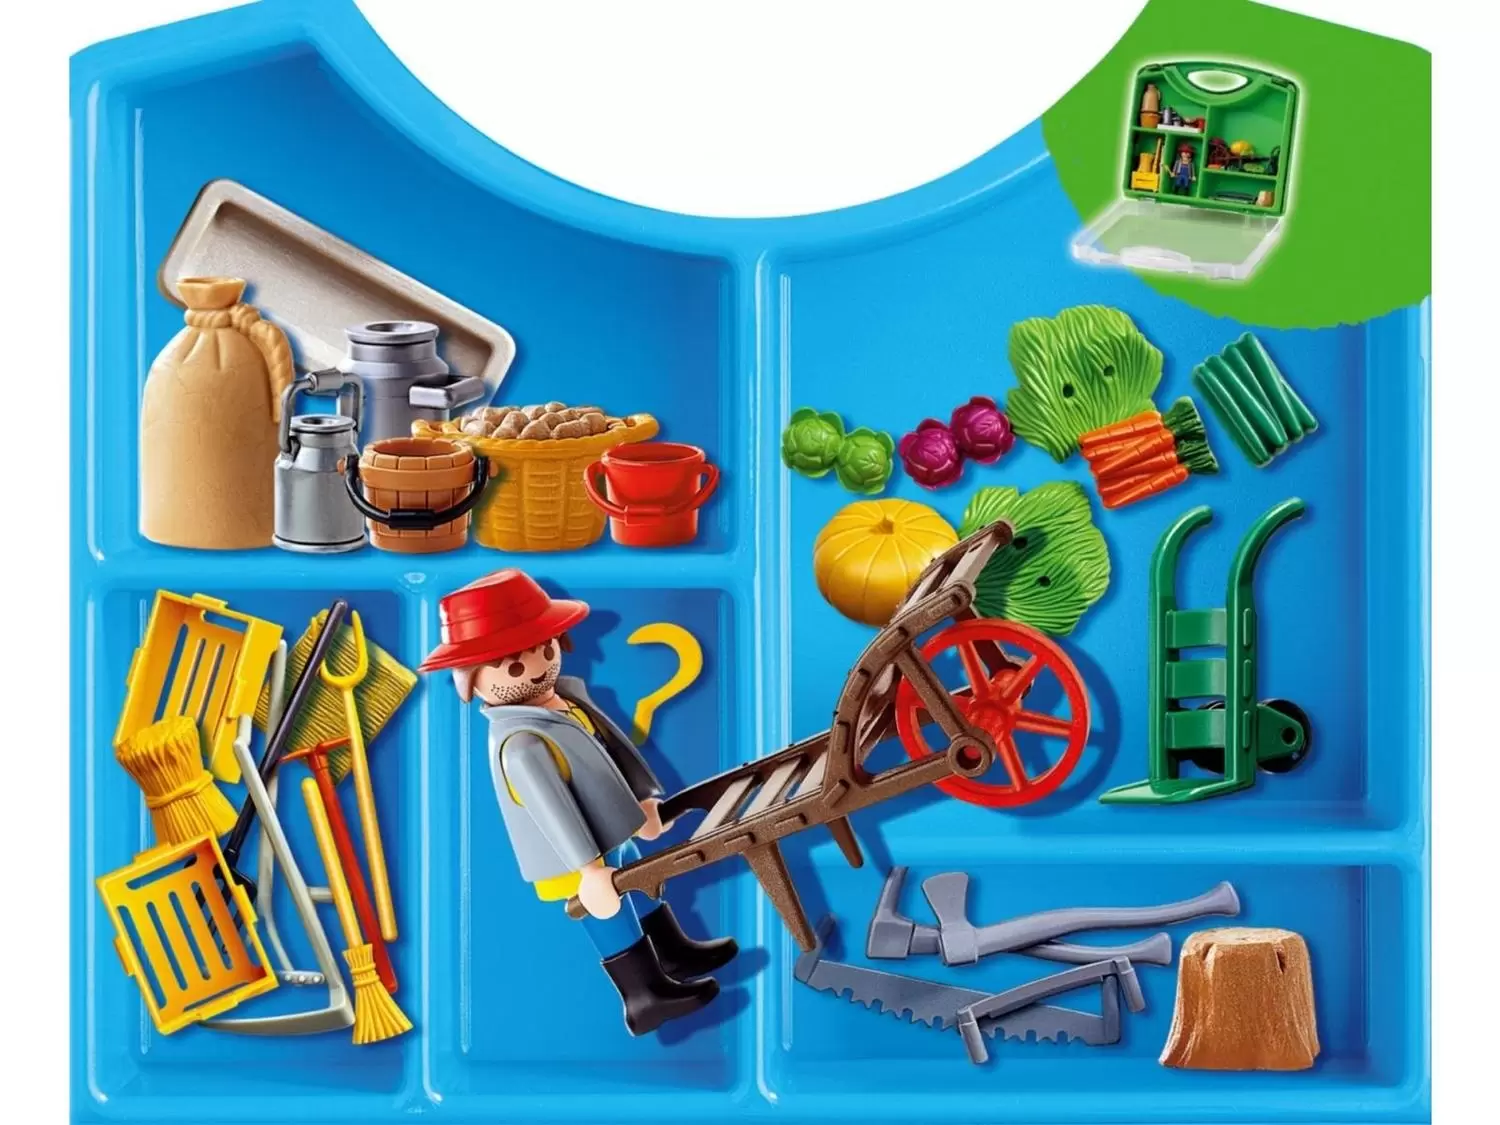 Playmobil Fermiers - Valisette fermier et accessoires